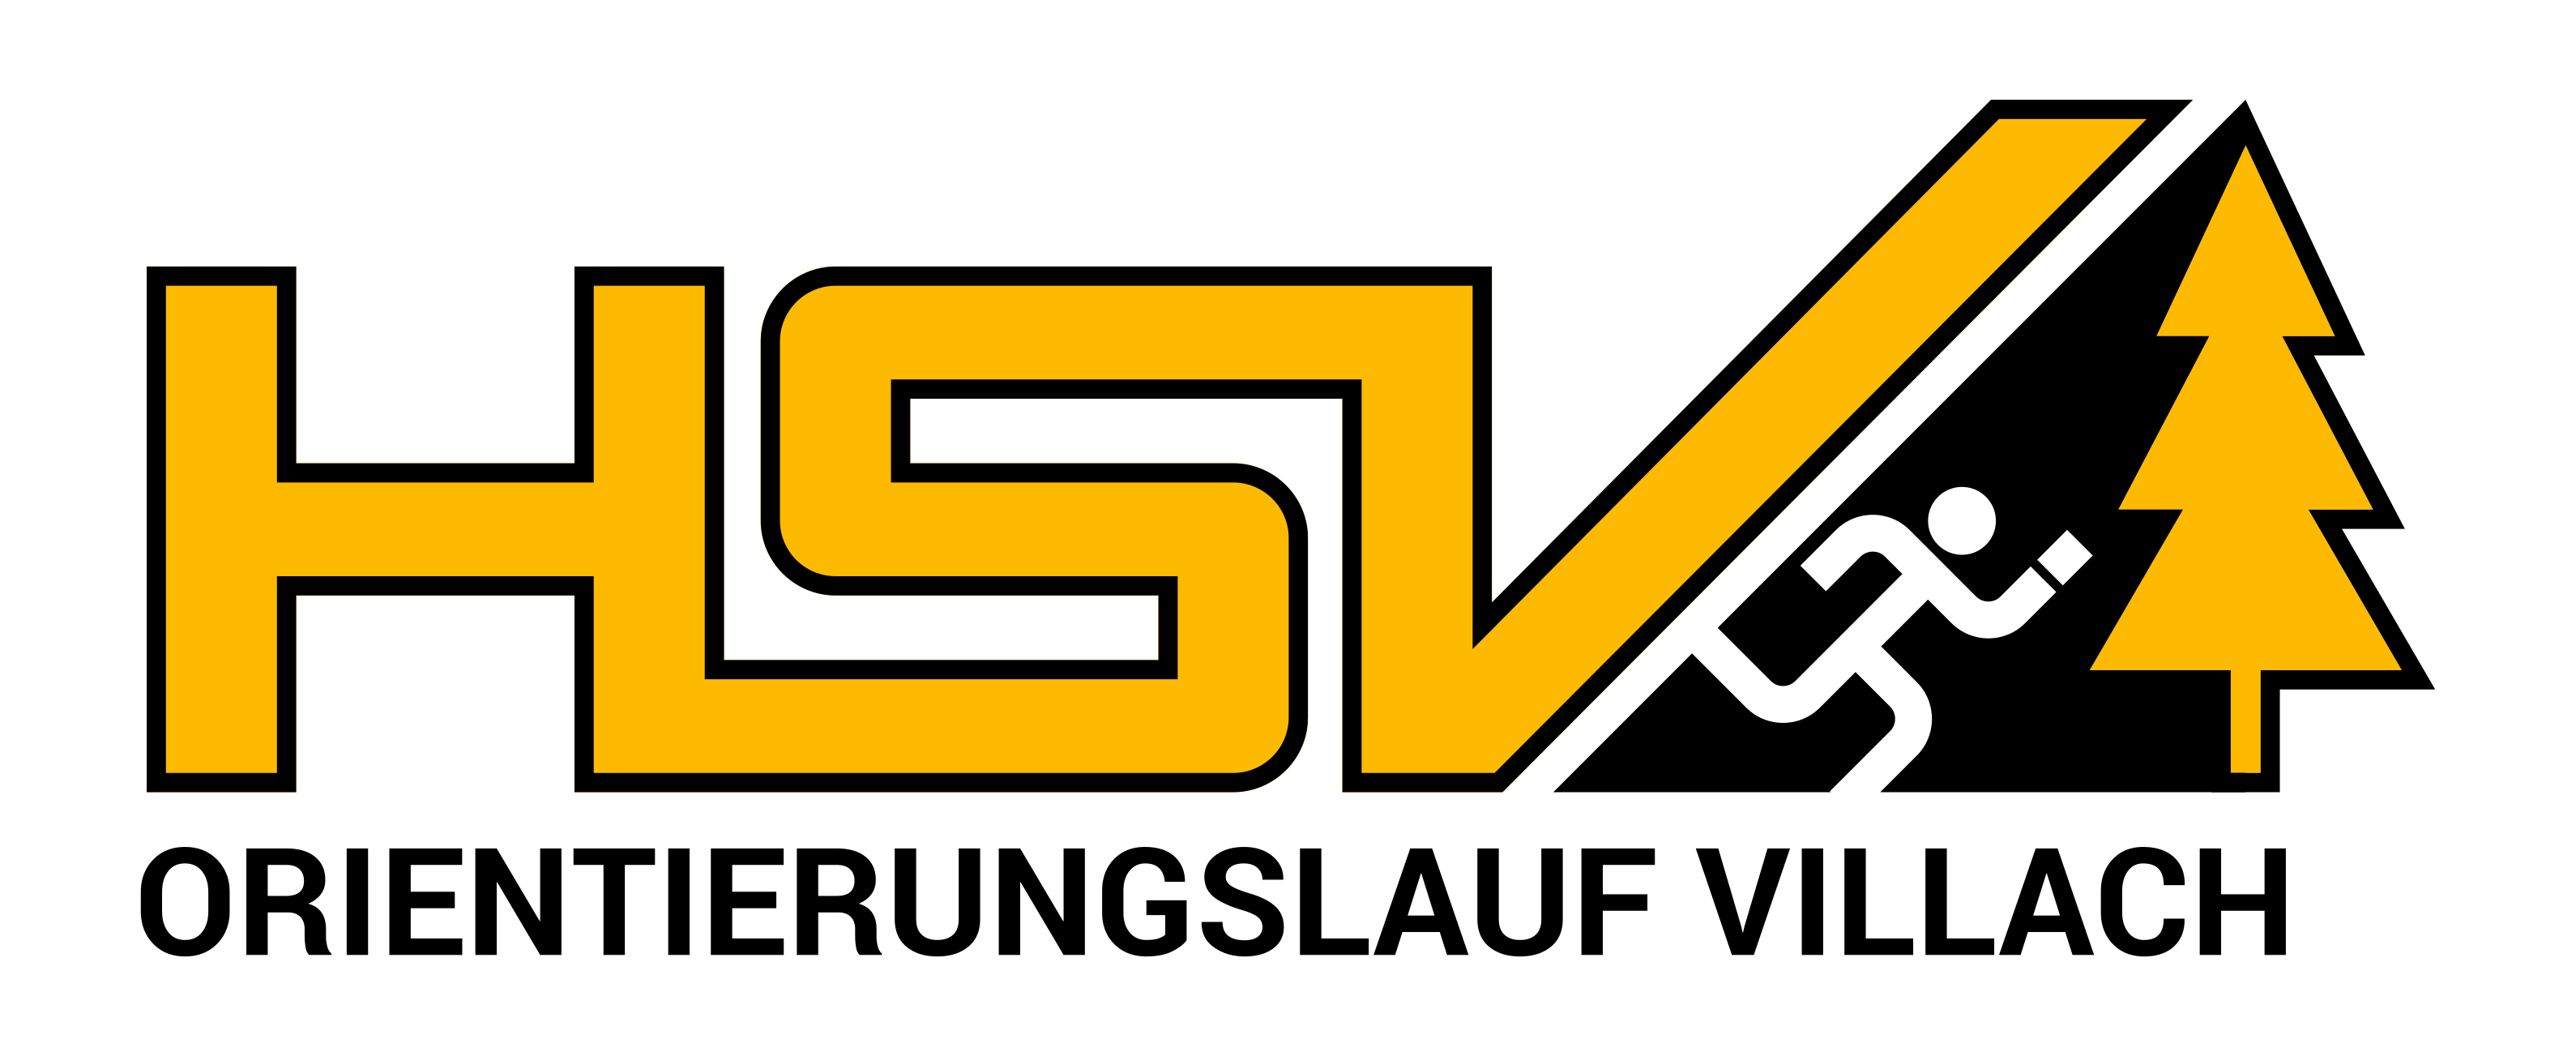 HSV Villach Orientierungslauf